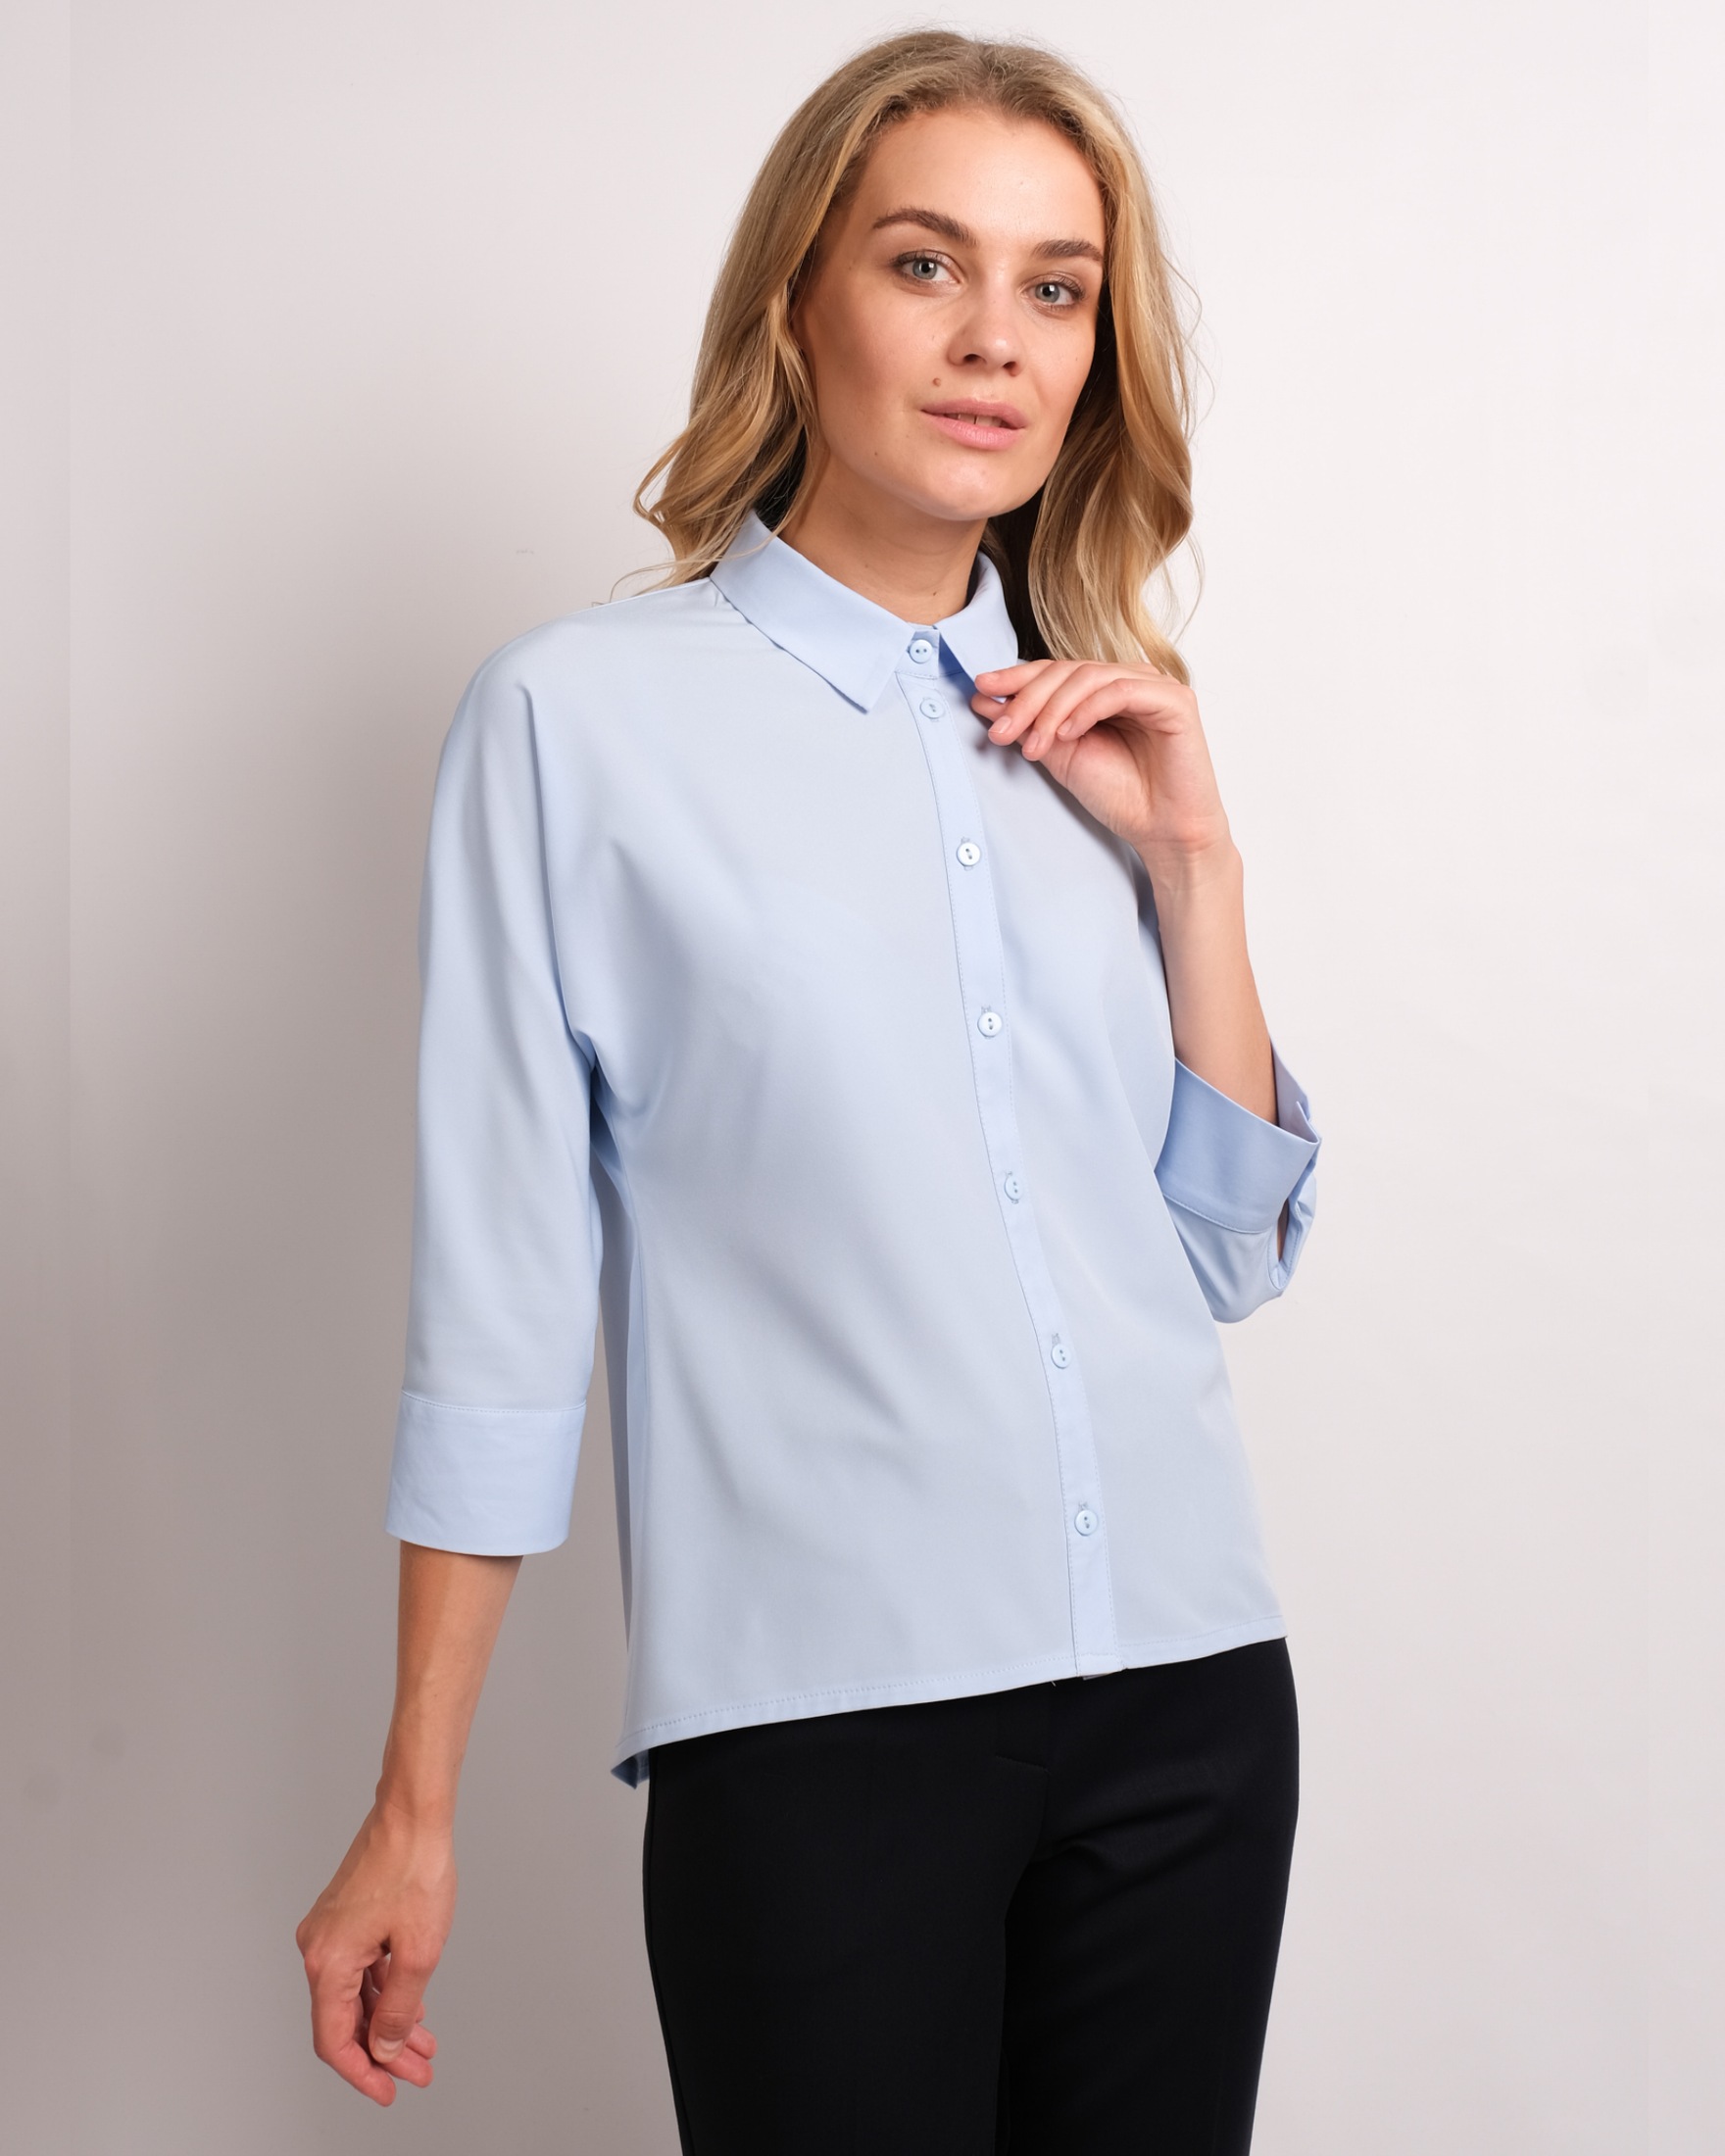 Базовая блузка. Блузка с цельнокроеным рукавом. Блуза с цельнокроеным рукавом. Блузка Базовая. Базовые блузы в офис.